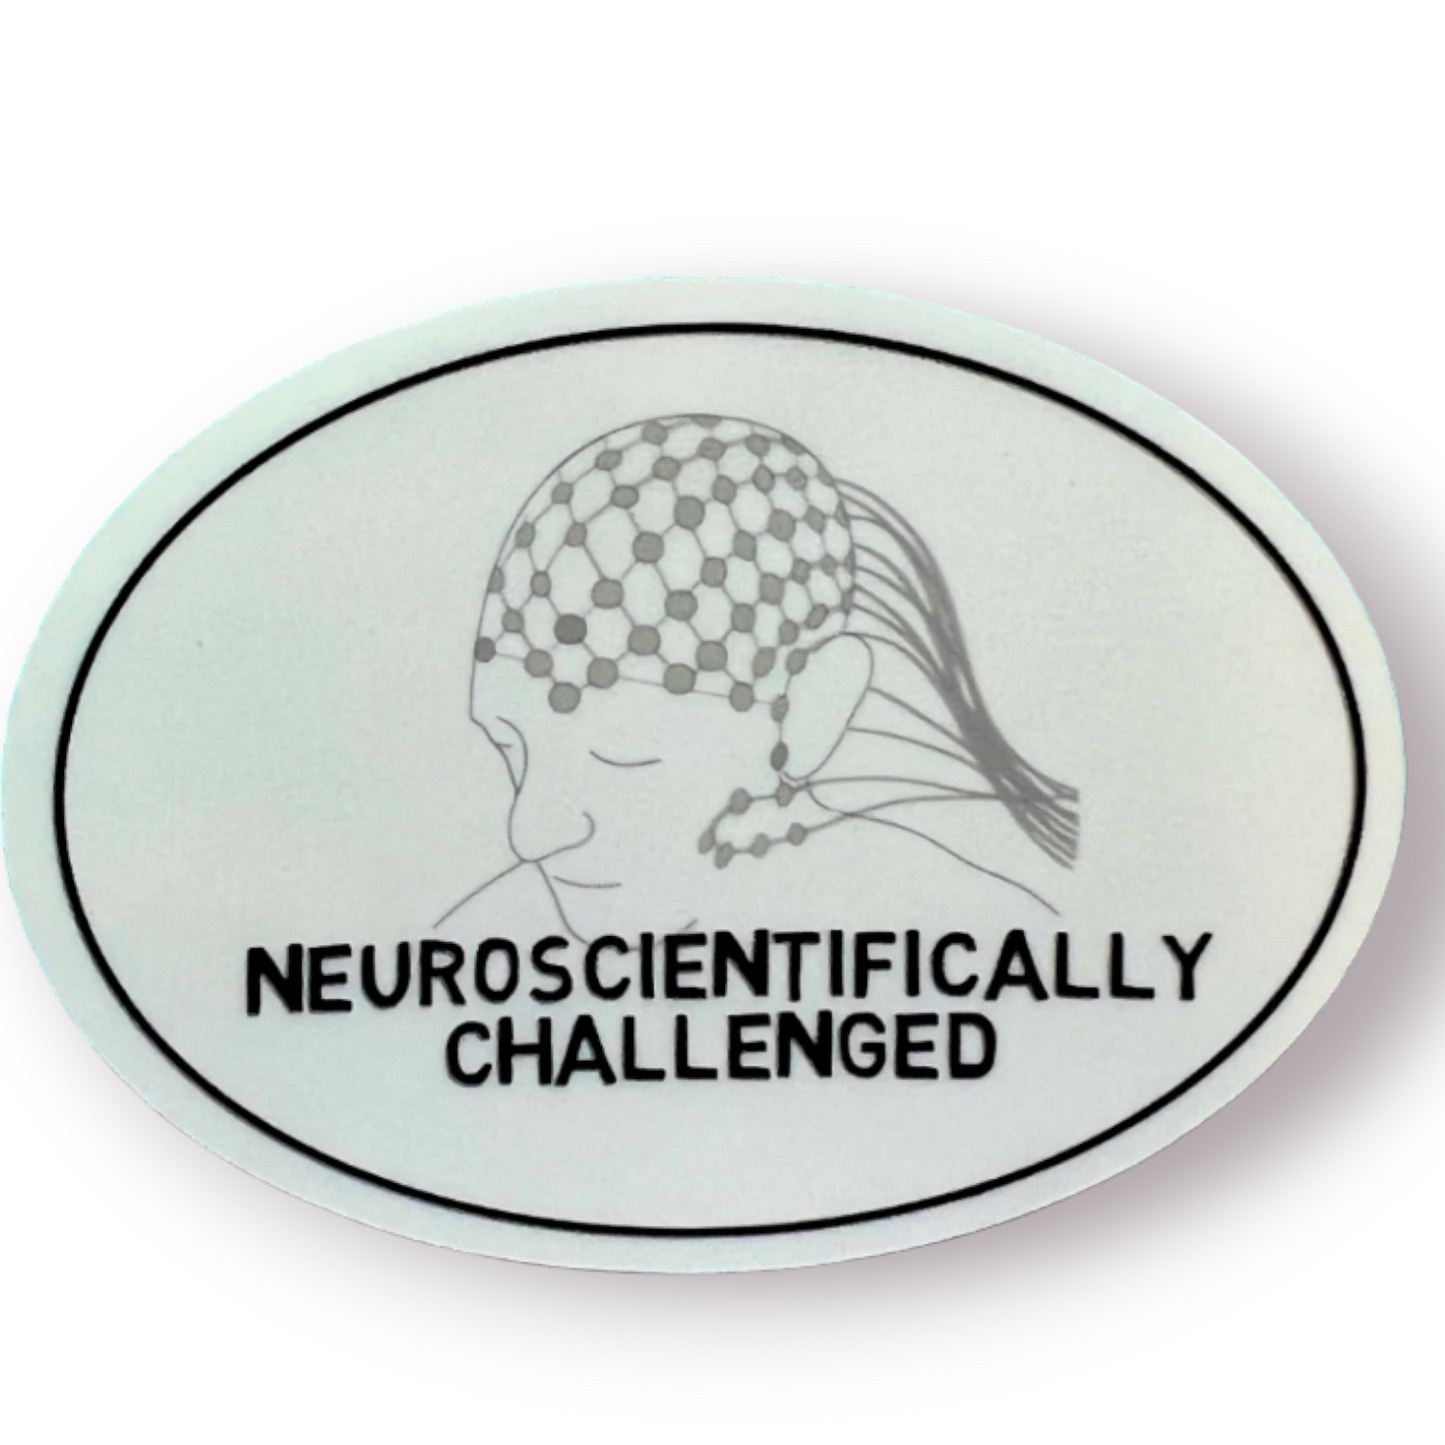 Neuroscientifically Challenged logo sticker